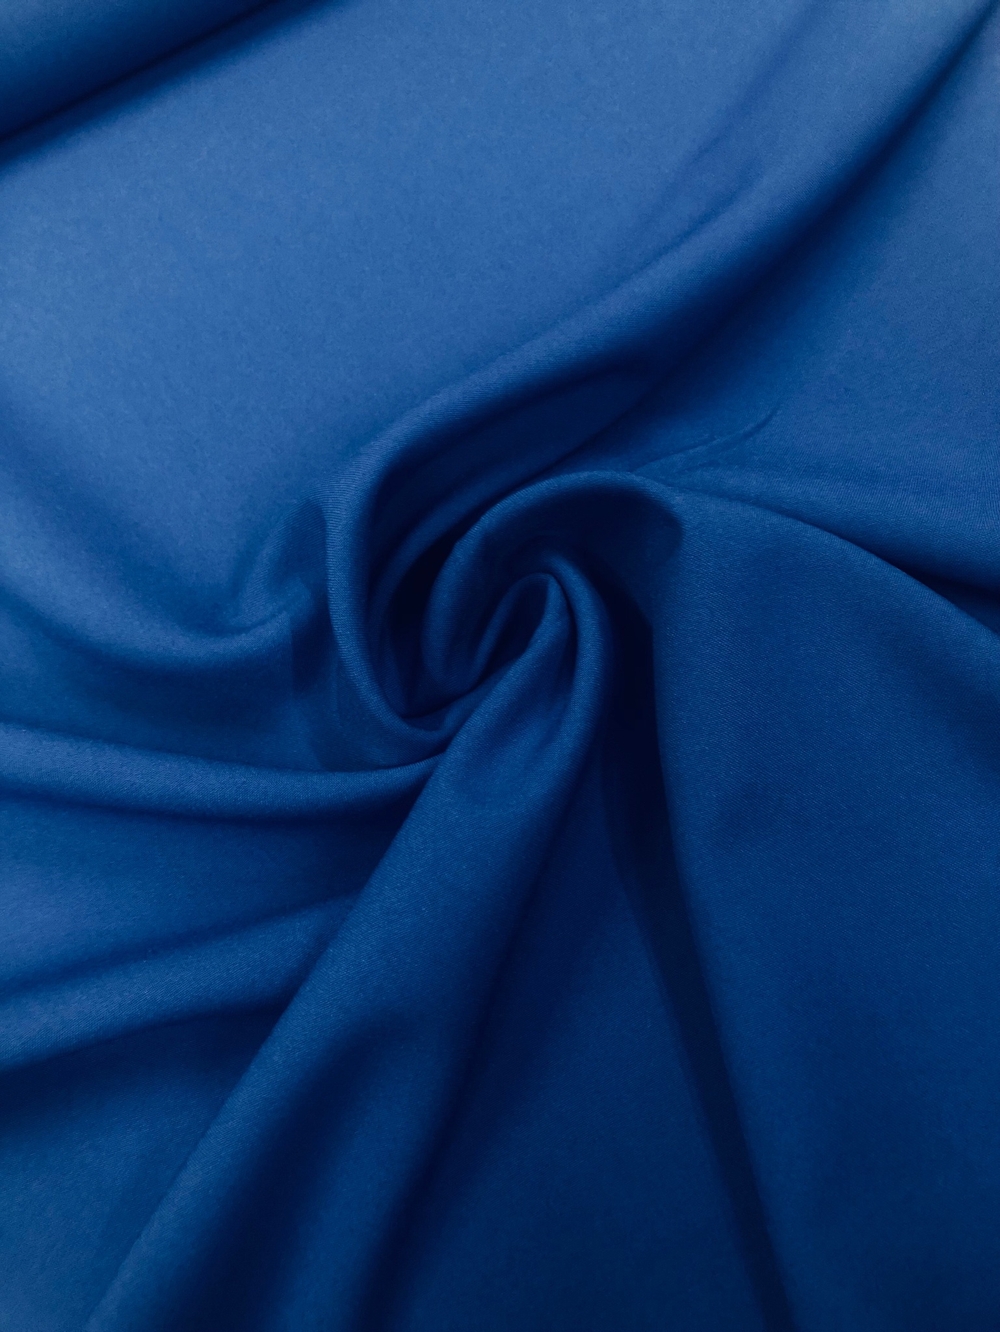 Ткань Габардин синий арт. 327094